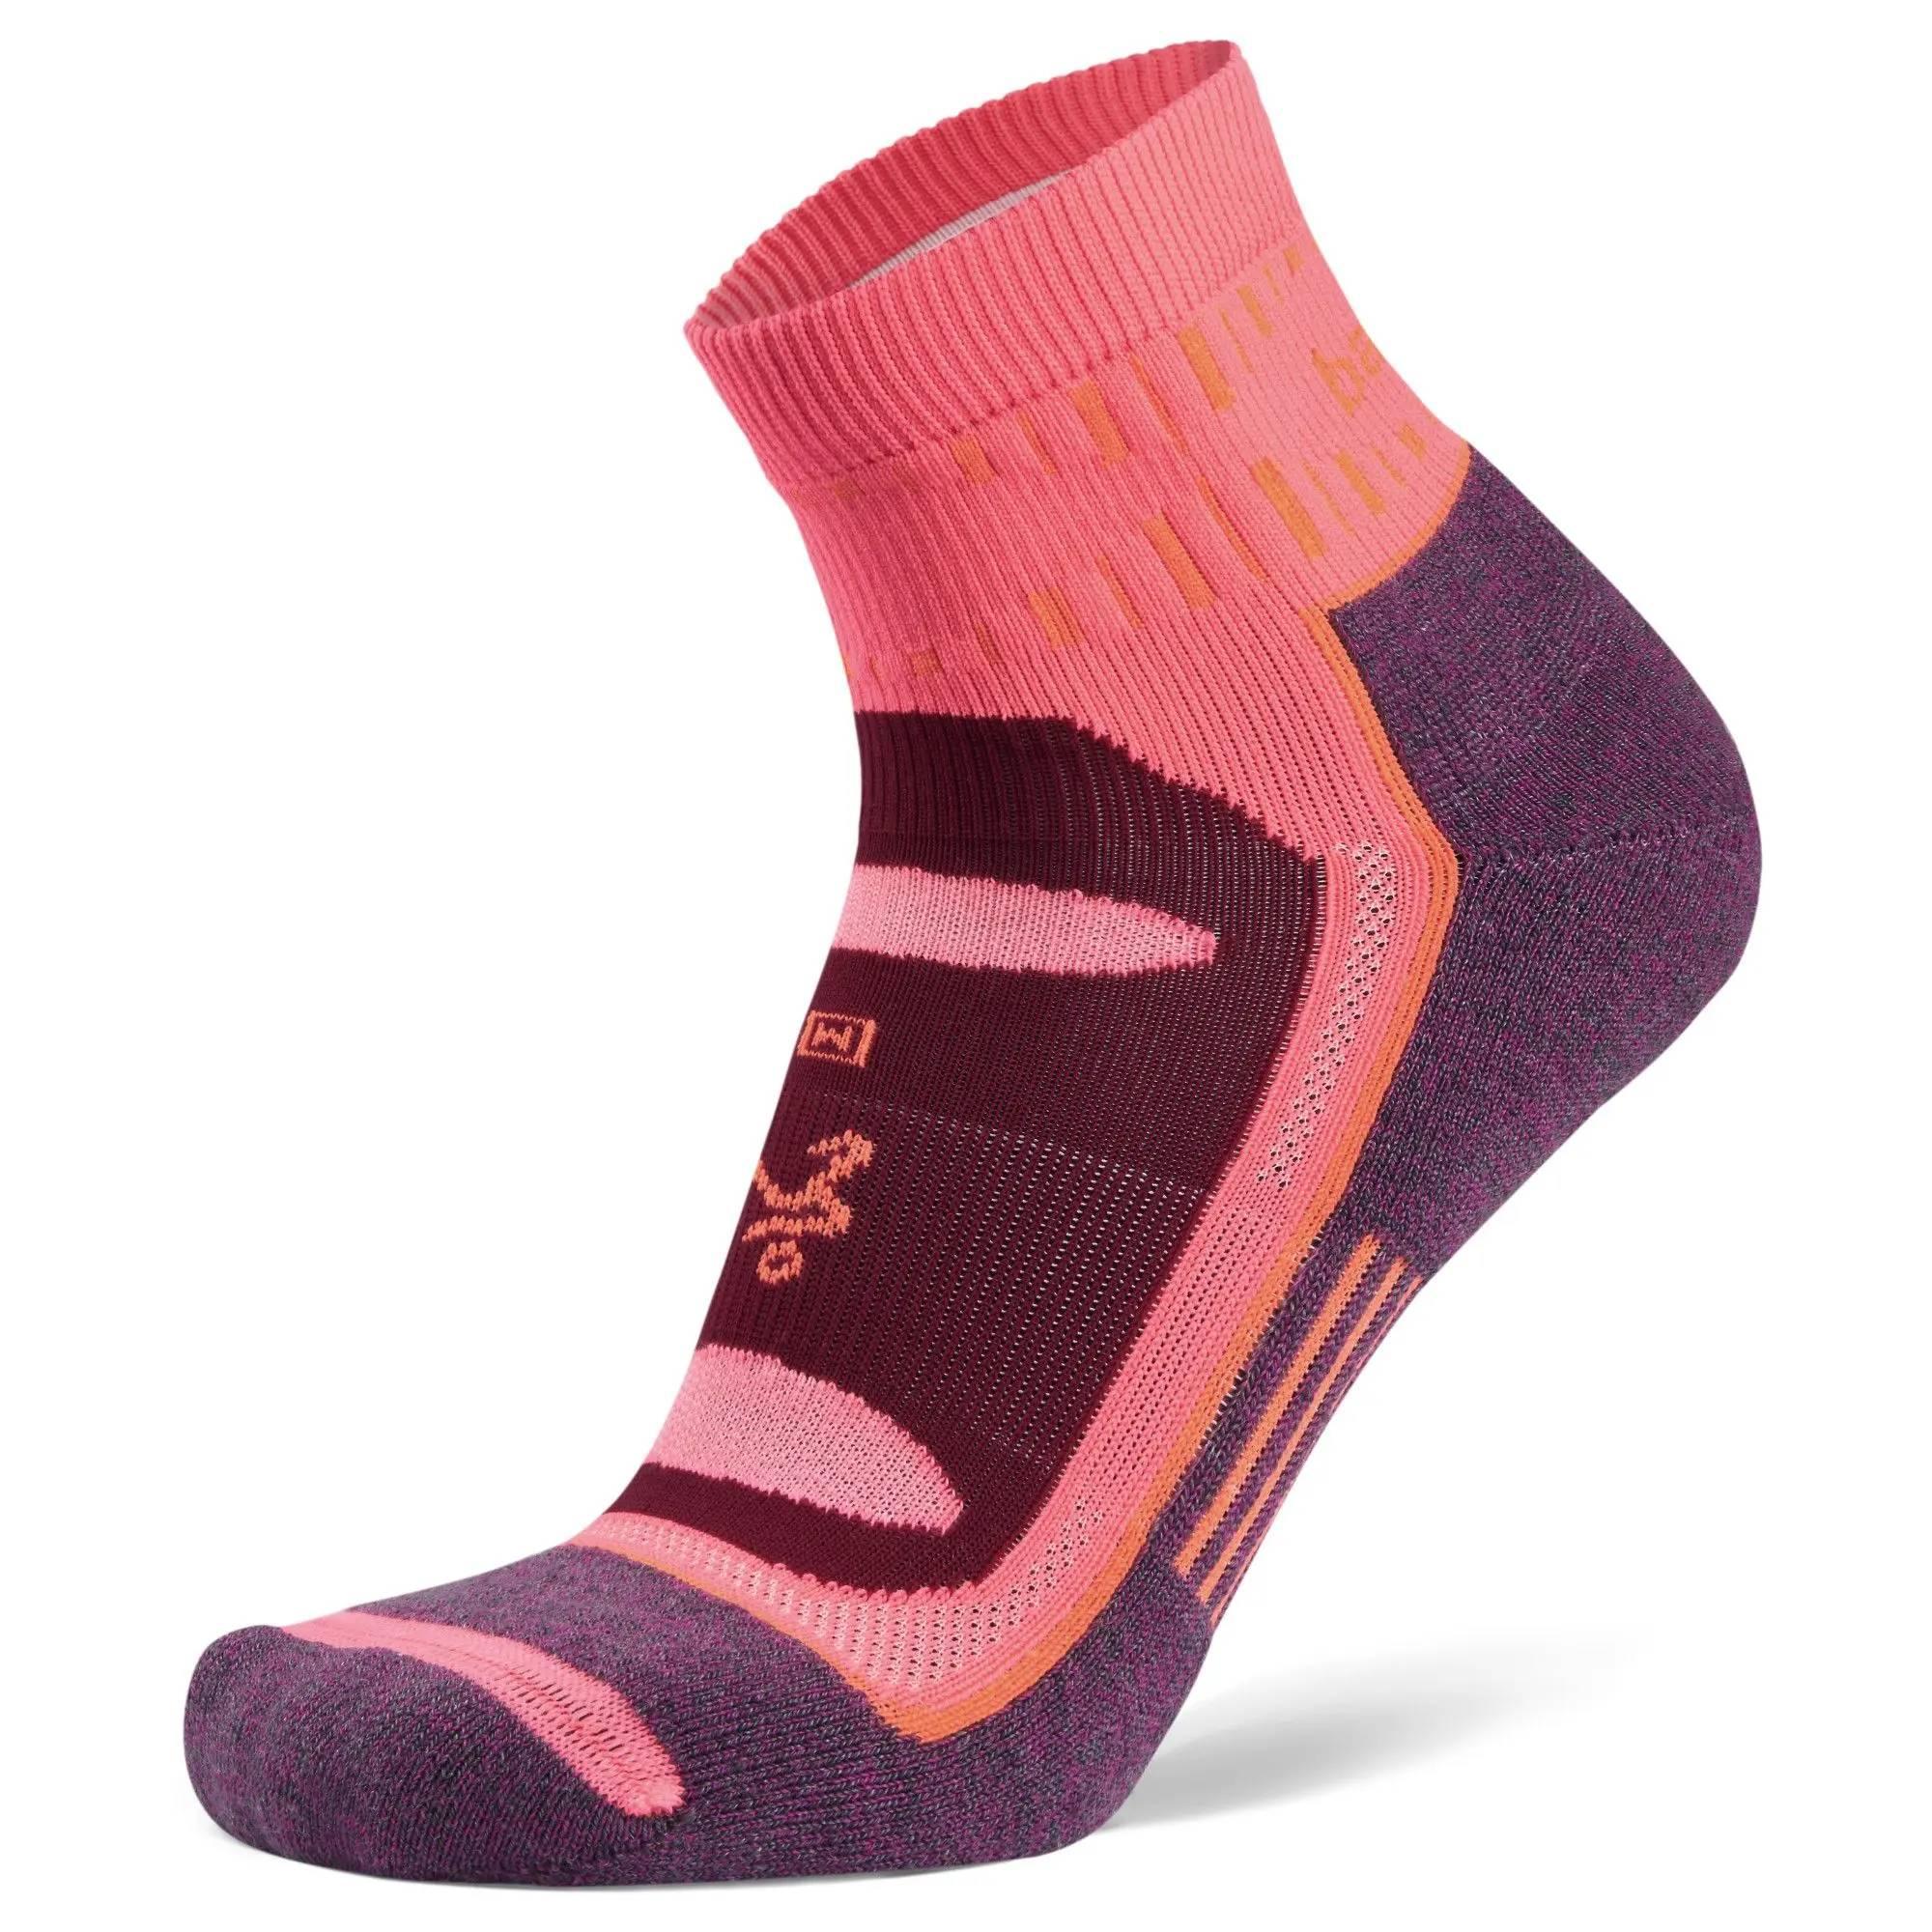 Balega Blister Resist Socks - Pink/widlberry